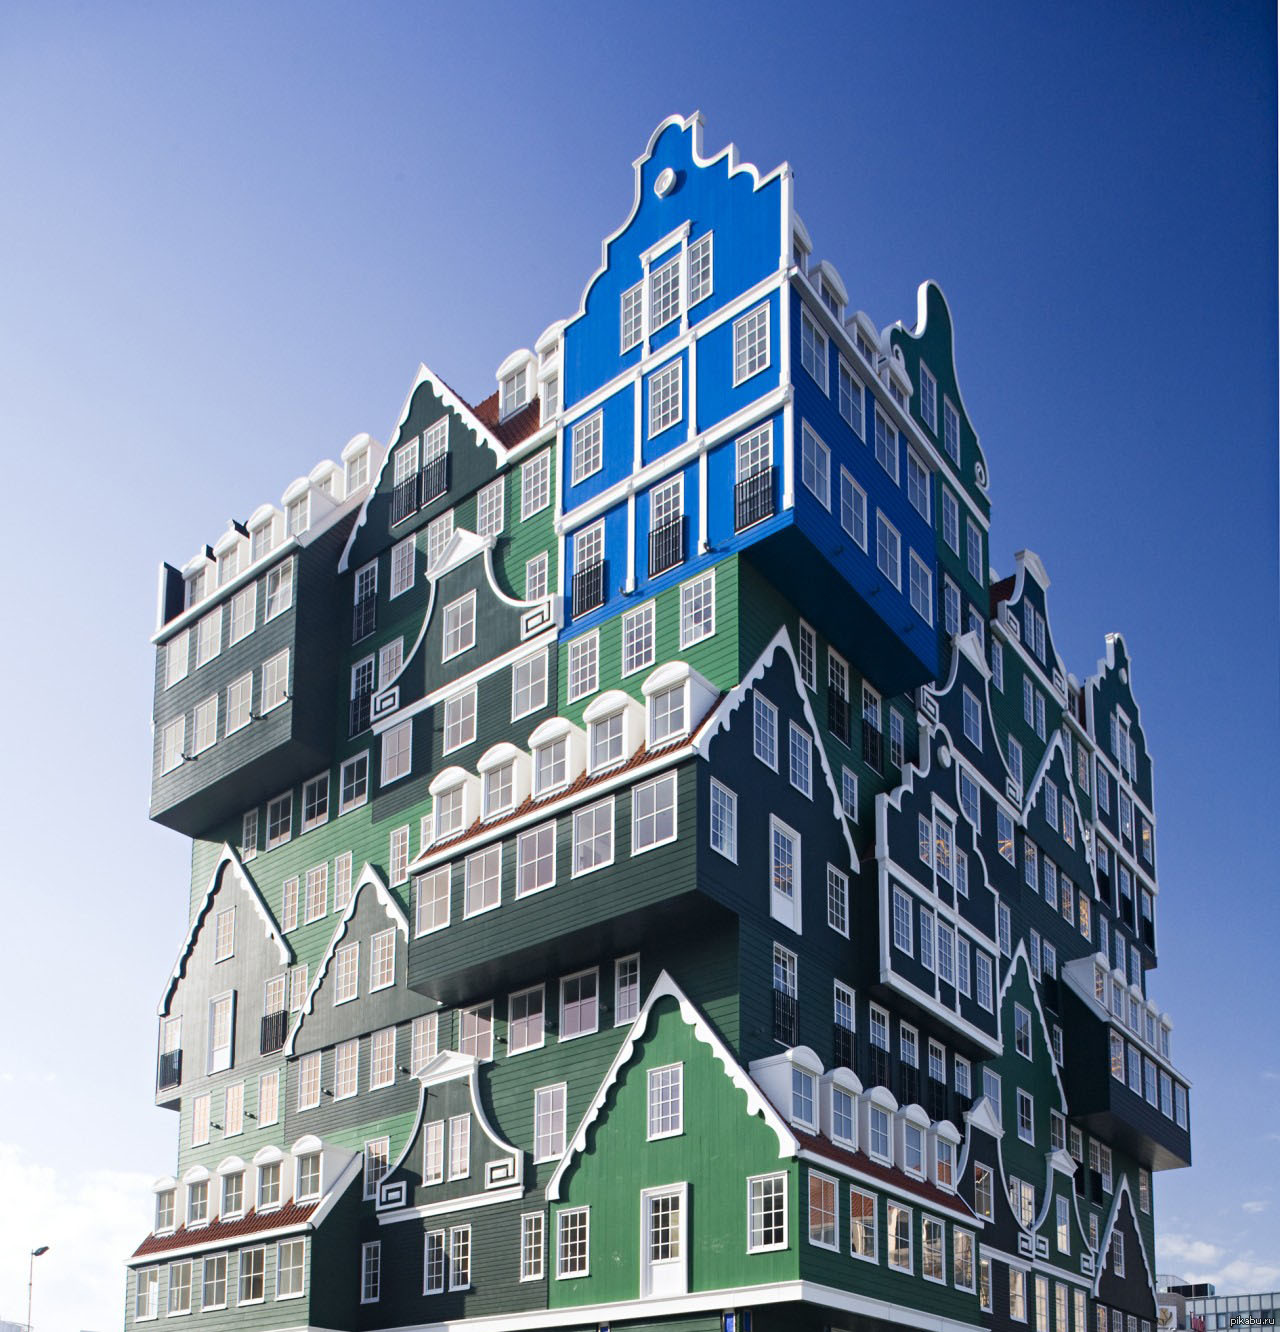 Unique building